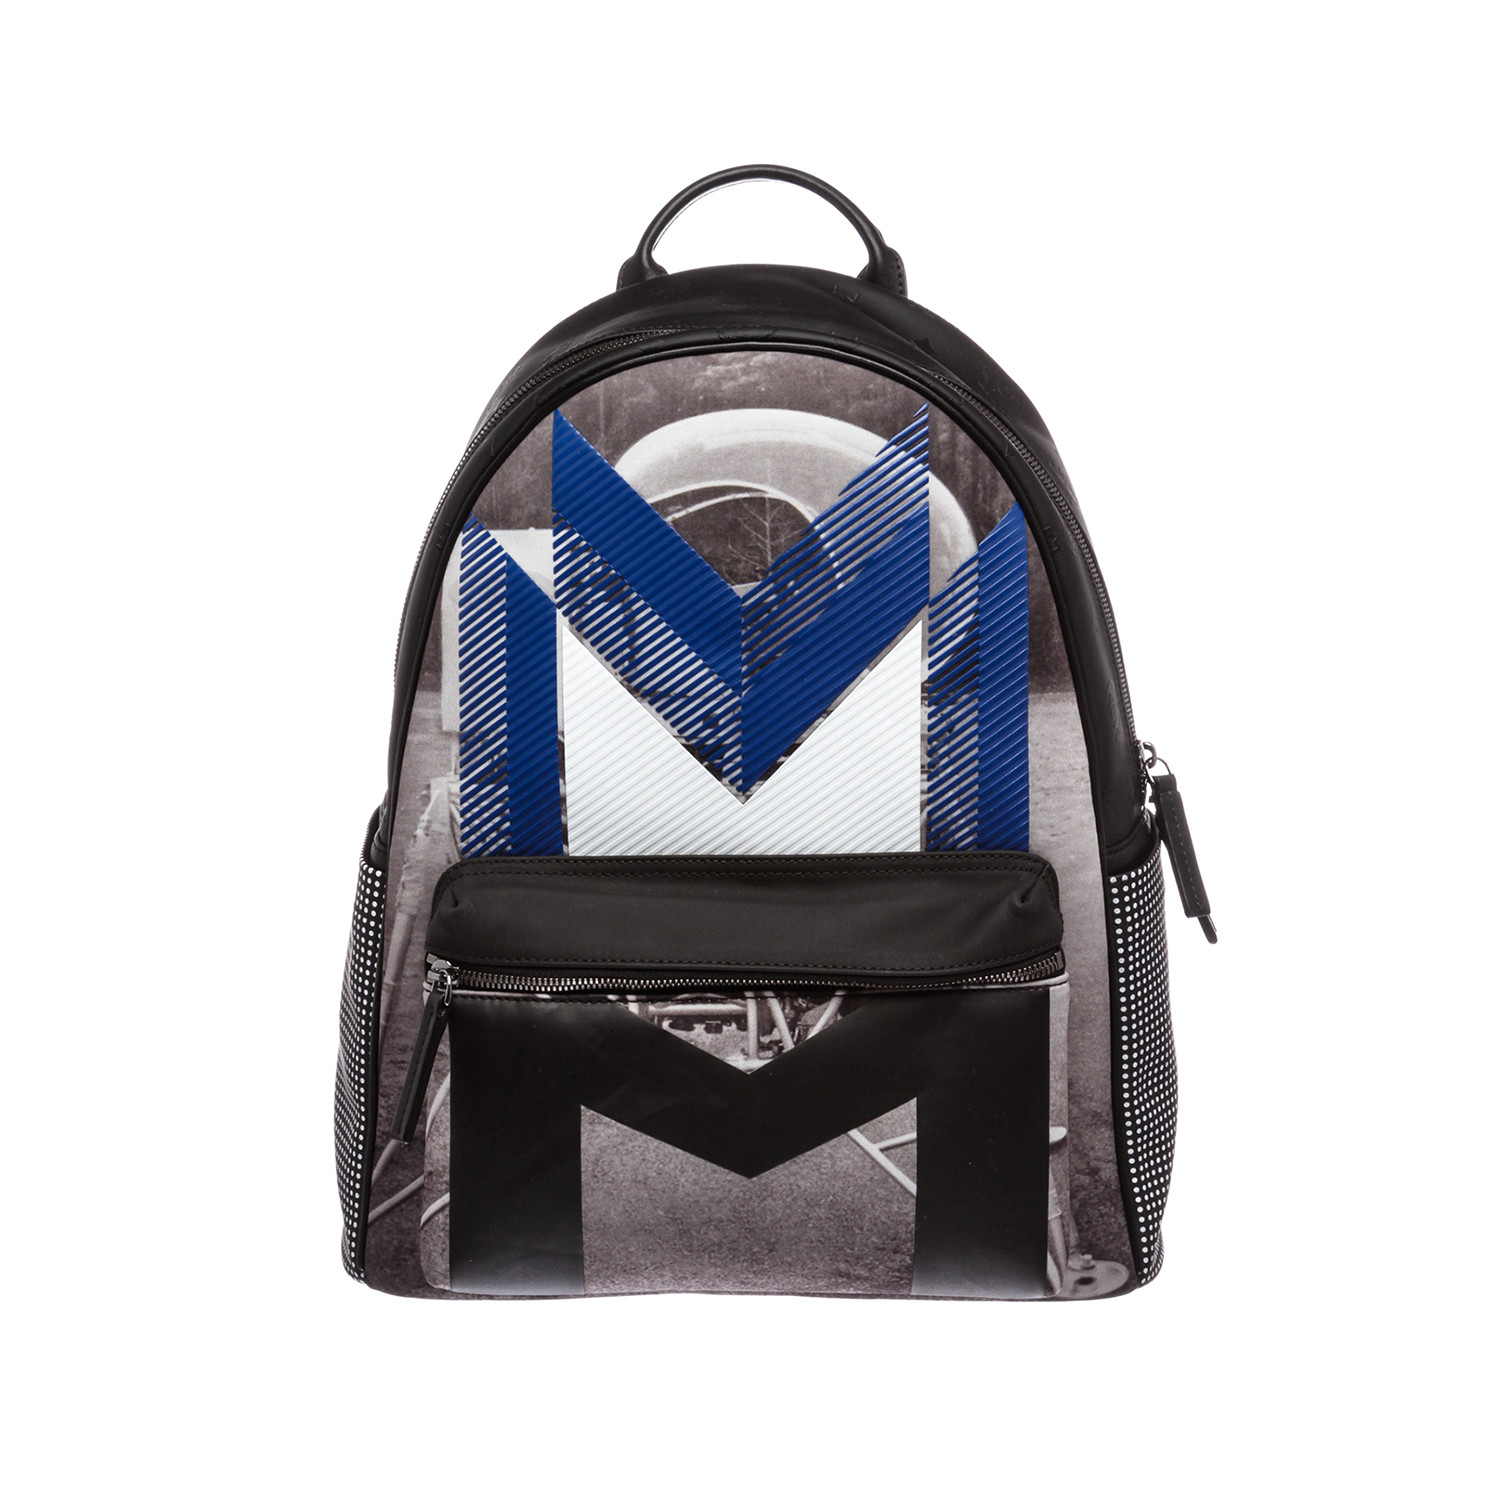 MCM // Moonwalker Series // Coated Canvas Backpack // Blue + Black // U8060 // Pre-Owned - Louis ...